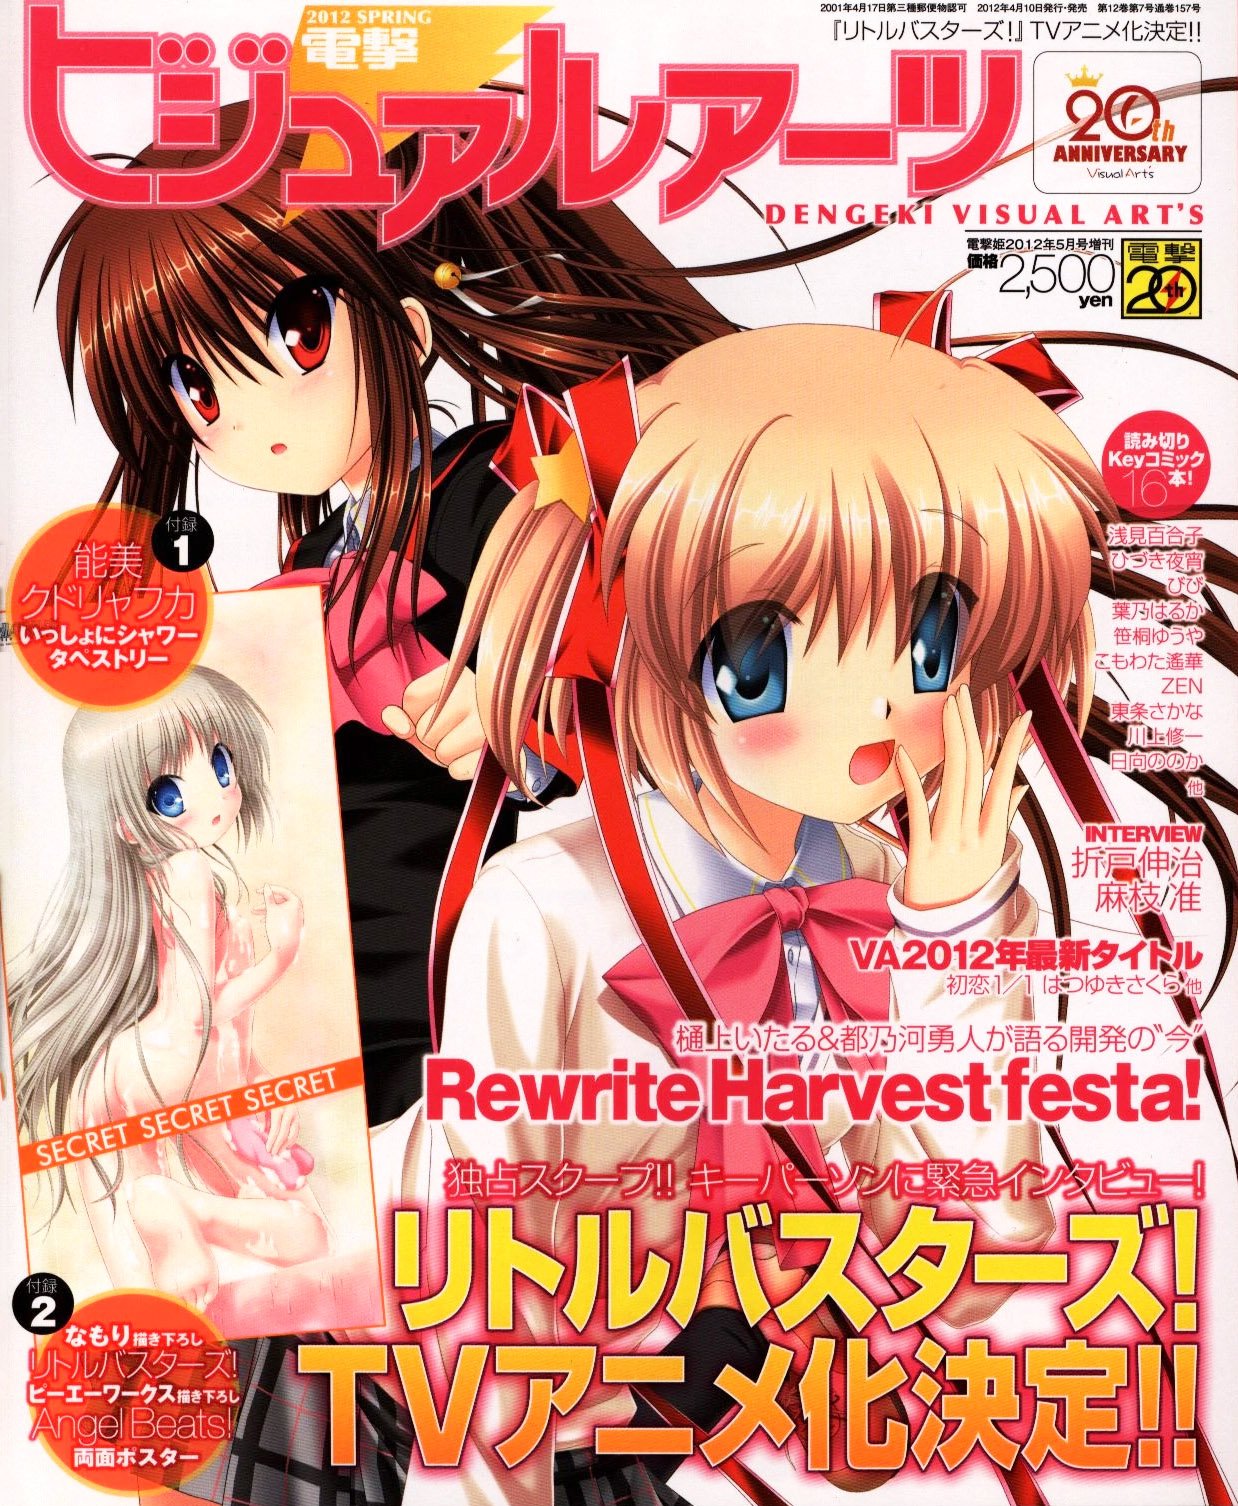 Dengeki Hime specials   Video Game Magazines   Retromags